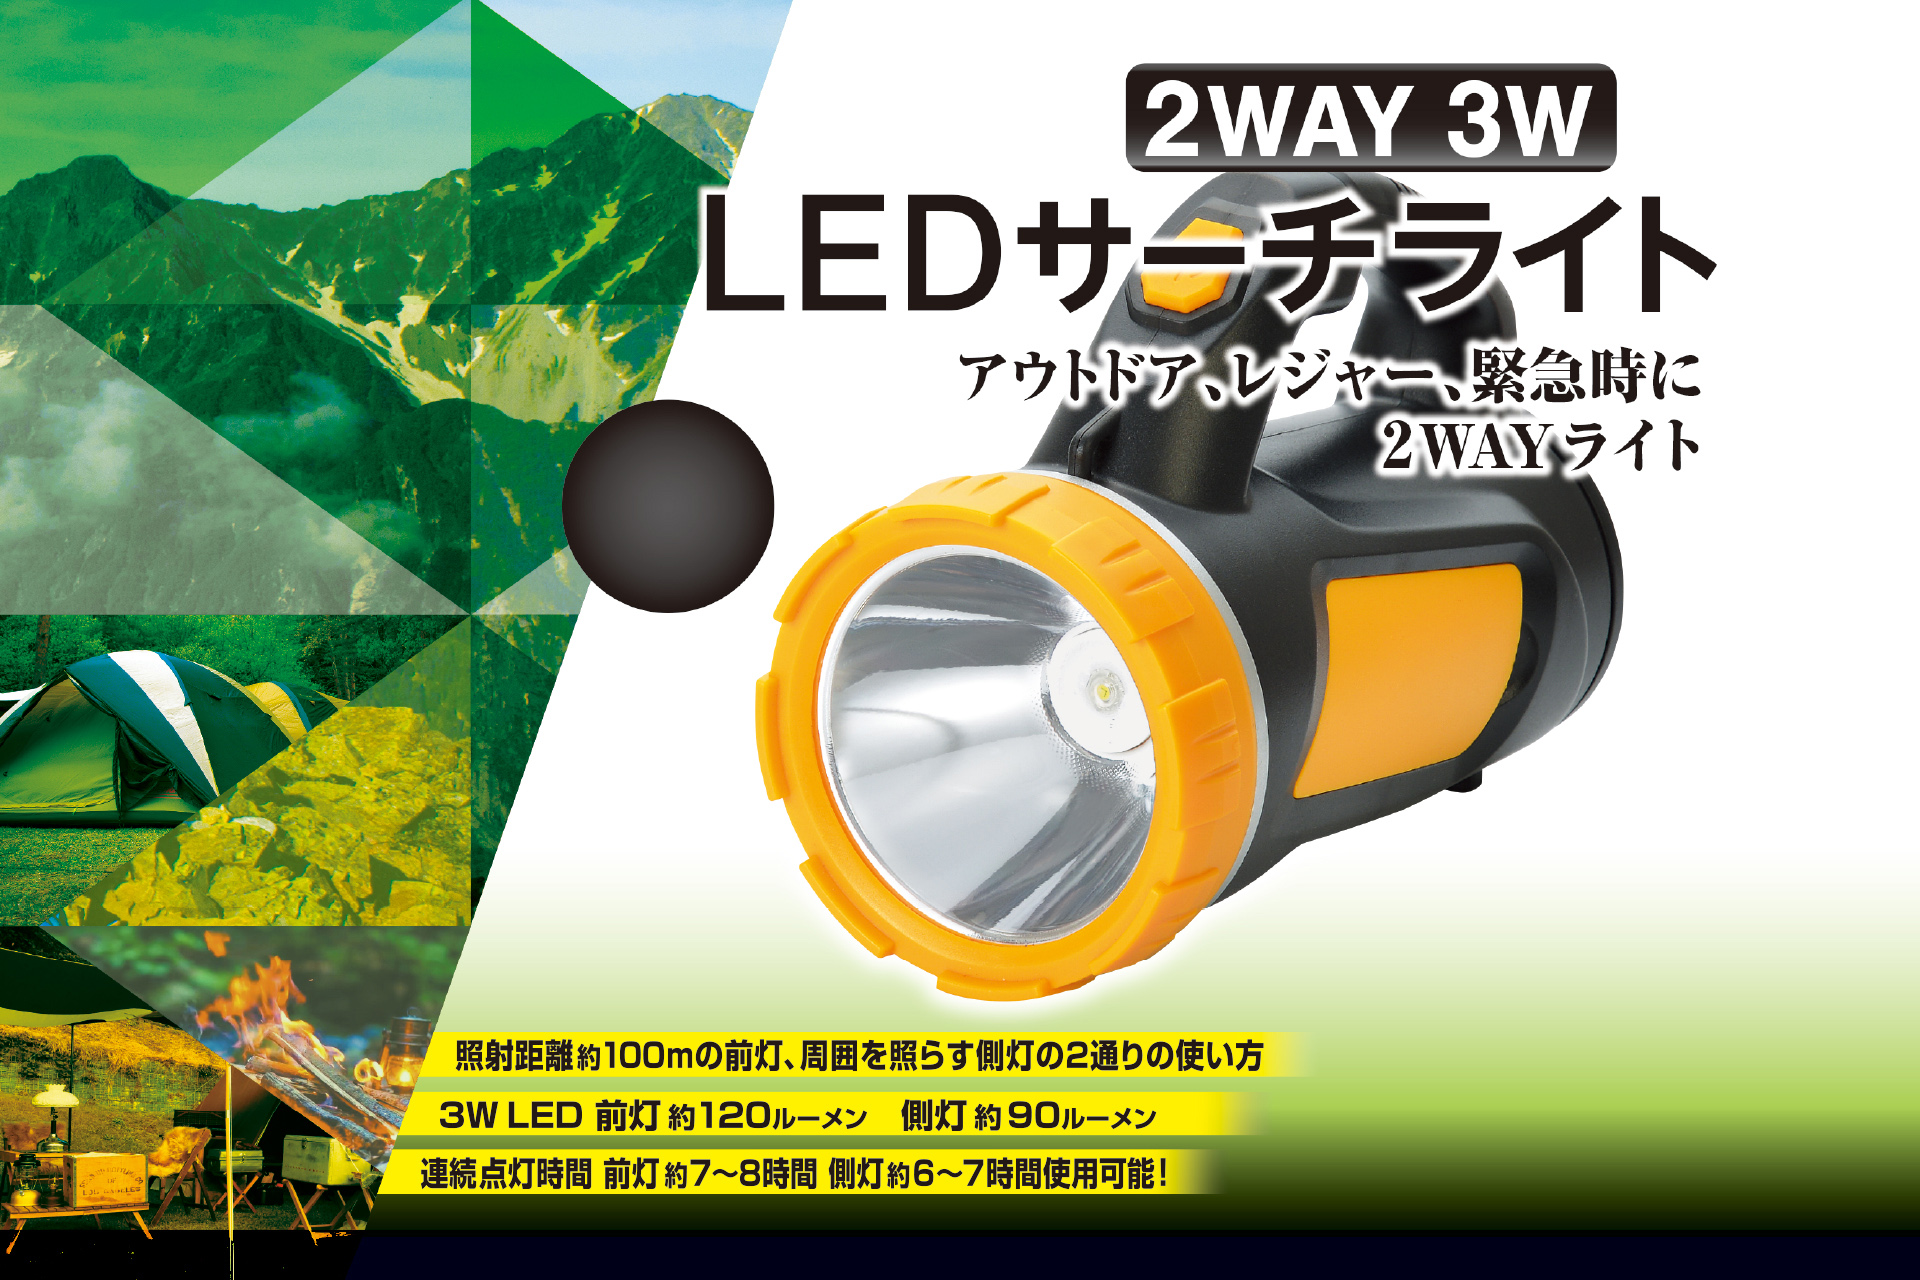 2WAY 3W LEDサーチライト